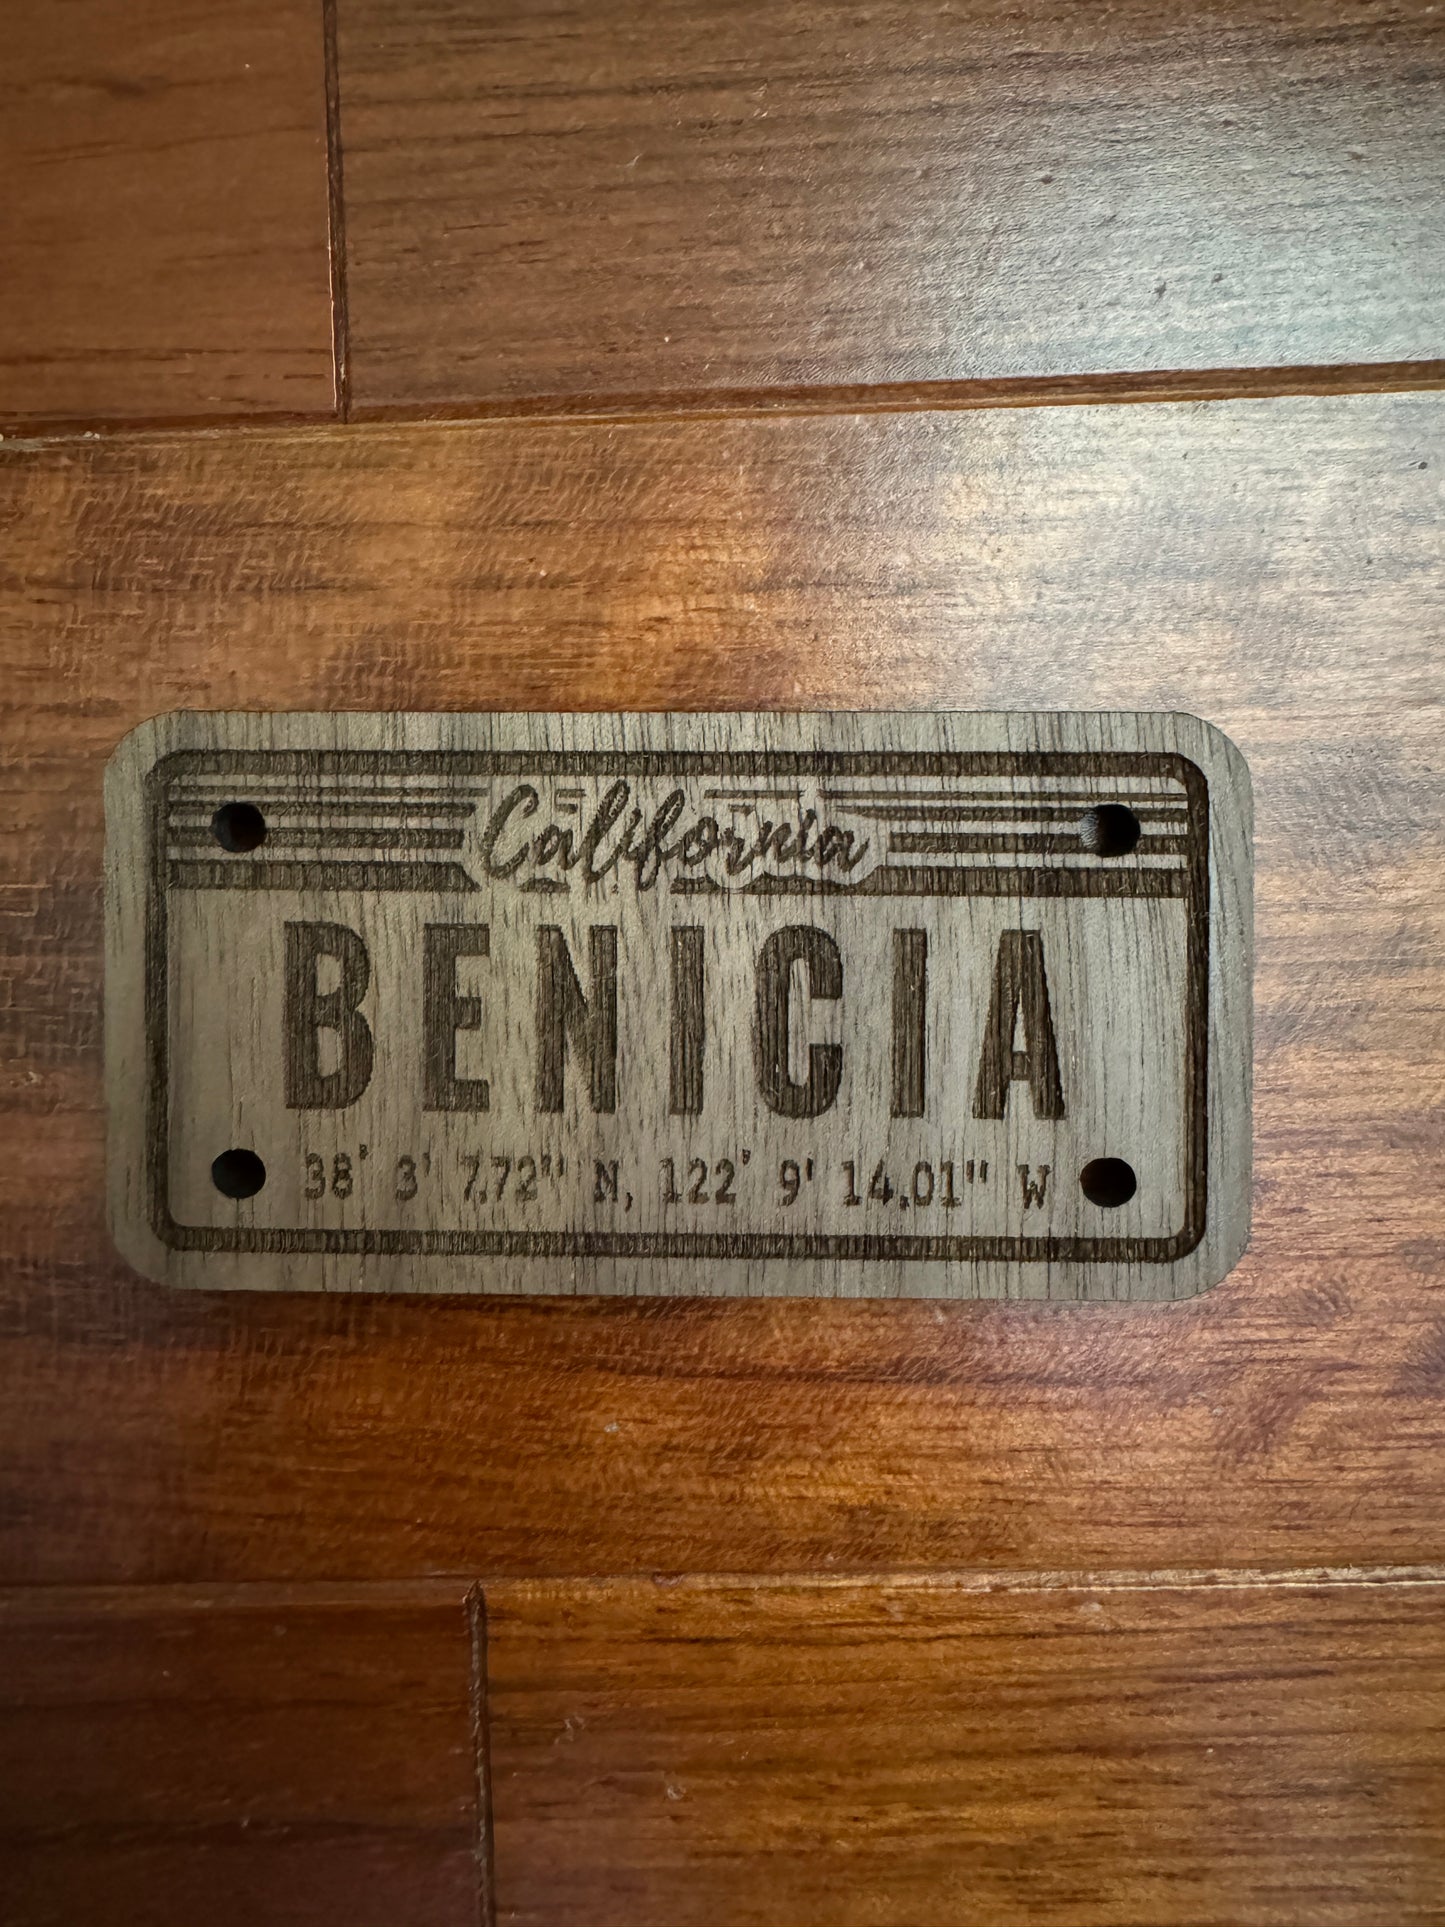 BENICIA | Wood Magnets |